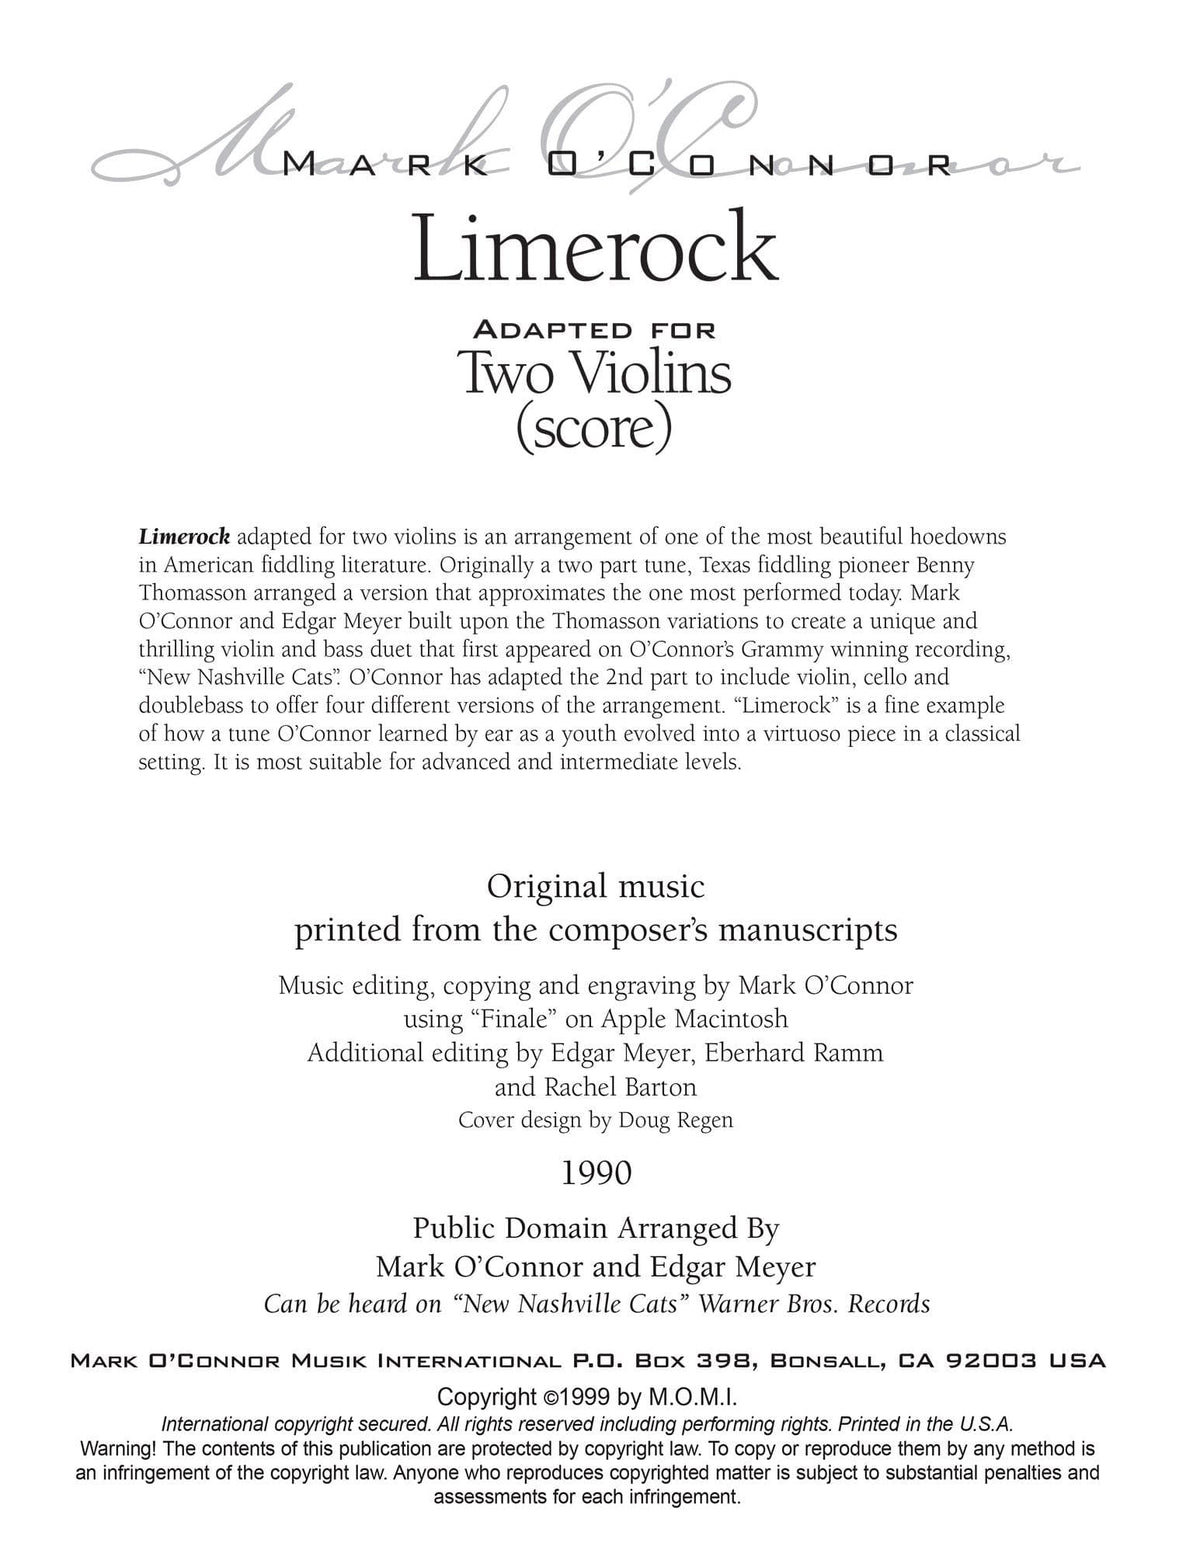 O'Connor, Mark - Limerock for 2 Violins - Score - Digital Download